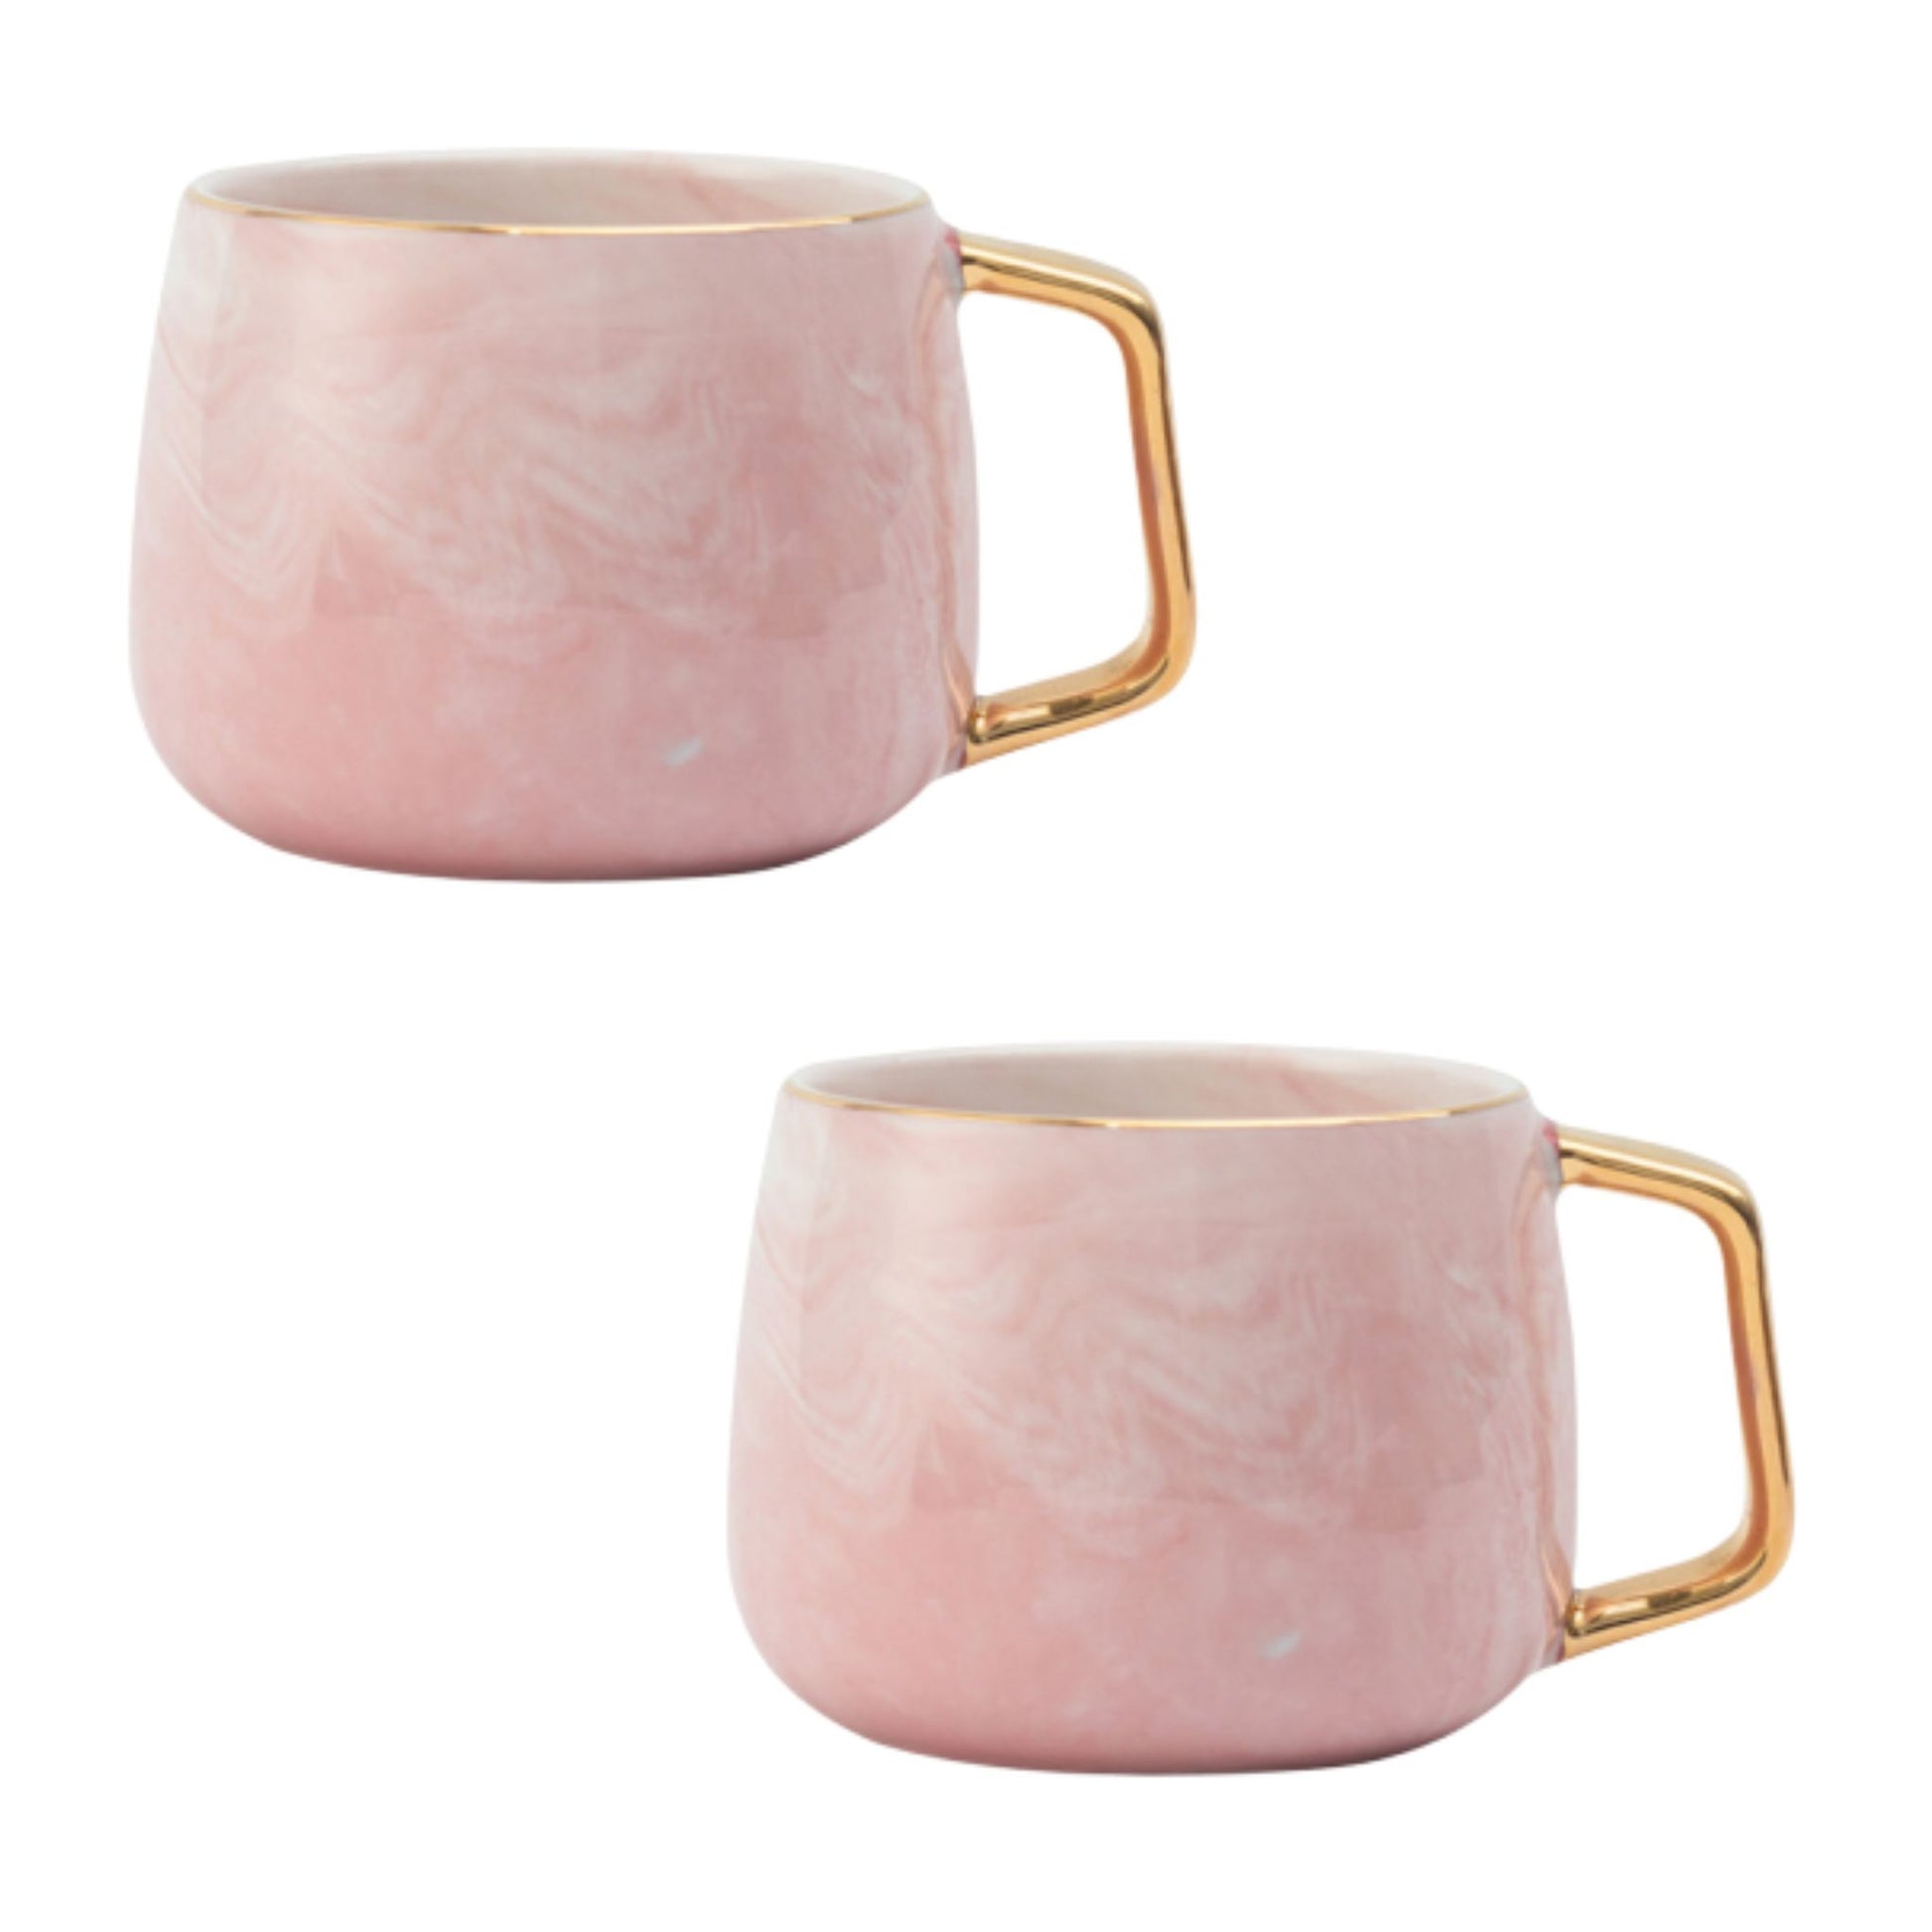 Rosa Marmor Tasse Eckiger Goldhenkel Schöne Tassen zum Verschenken Luxus Tassen Set Schönes Marmor Geschirr Luxus Geschirr mit Gold 2er Set